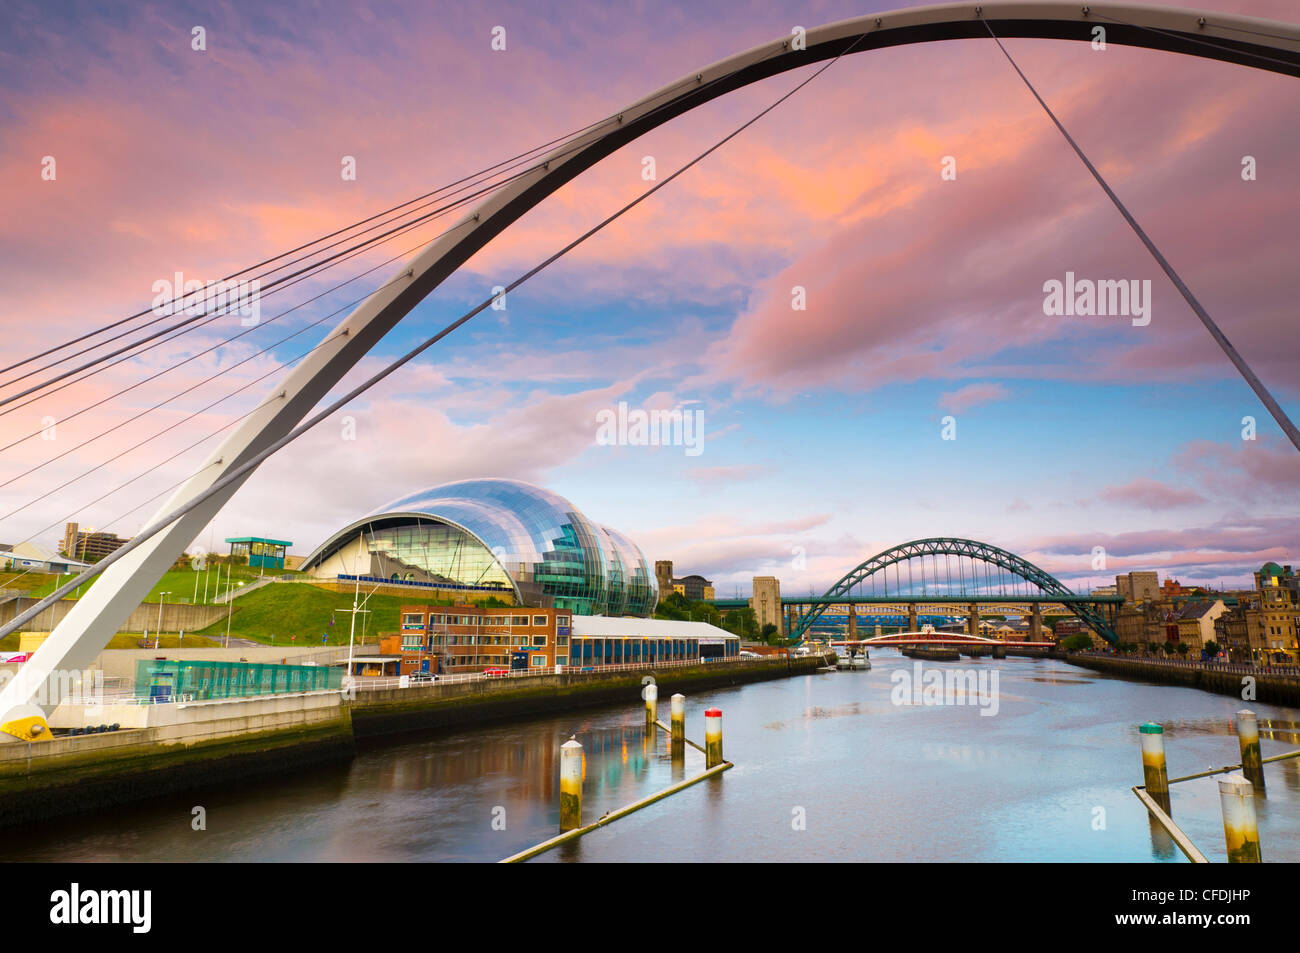 El Puente del Milenio y el sabio,el río Tyne Tyne Bridge, en el fondo, Gateshead, Tyne y desgaste, Inglaterra, Reino Unido. Foto de stock